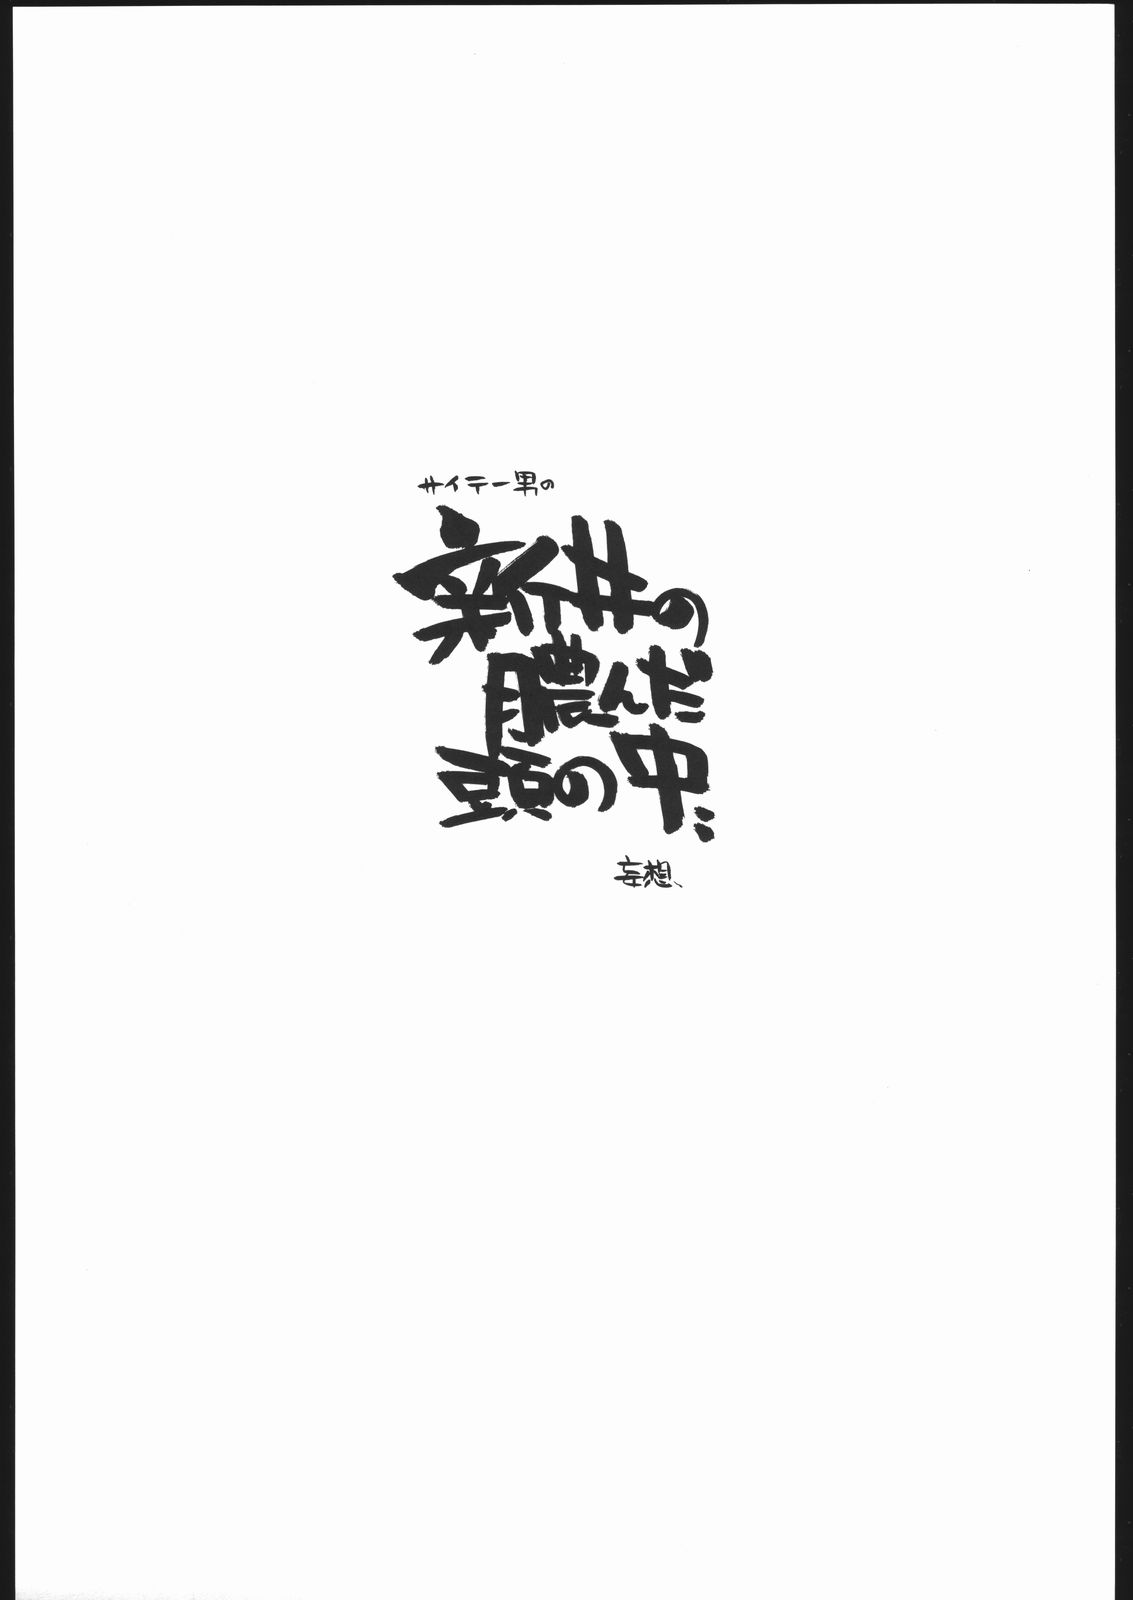 [Maruarai] Mohsoh Note [まるあらい] 妄想ノート